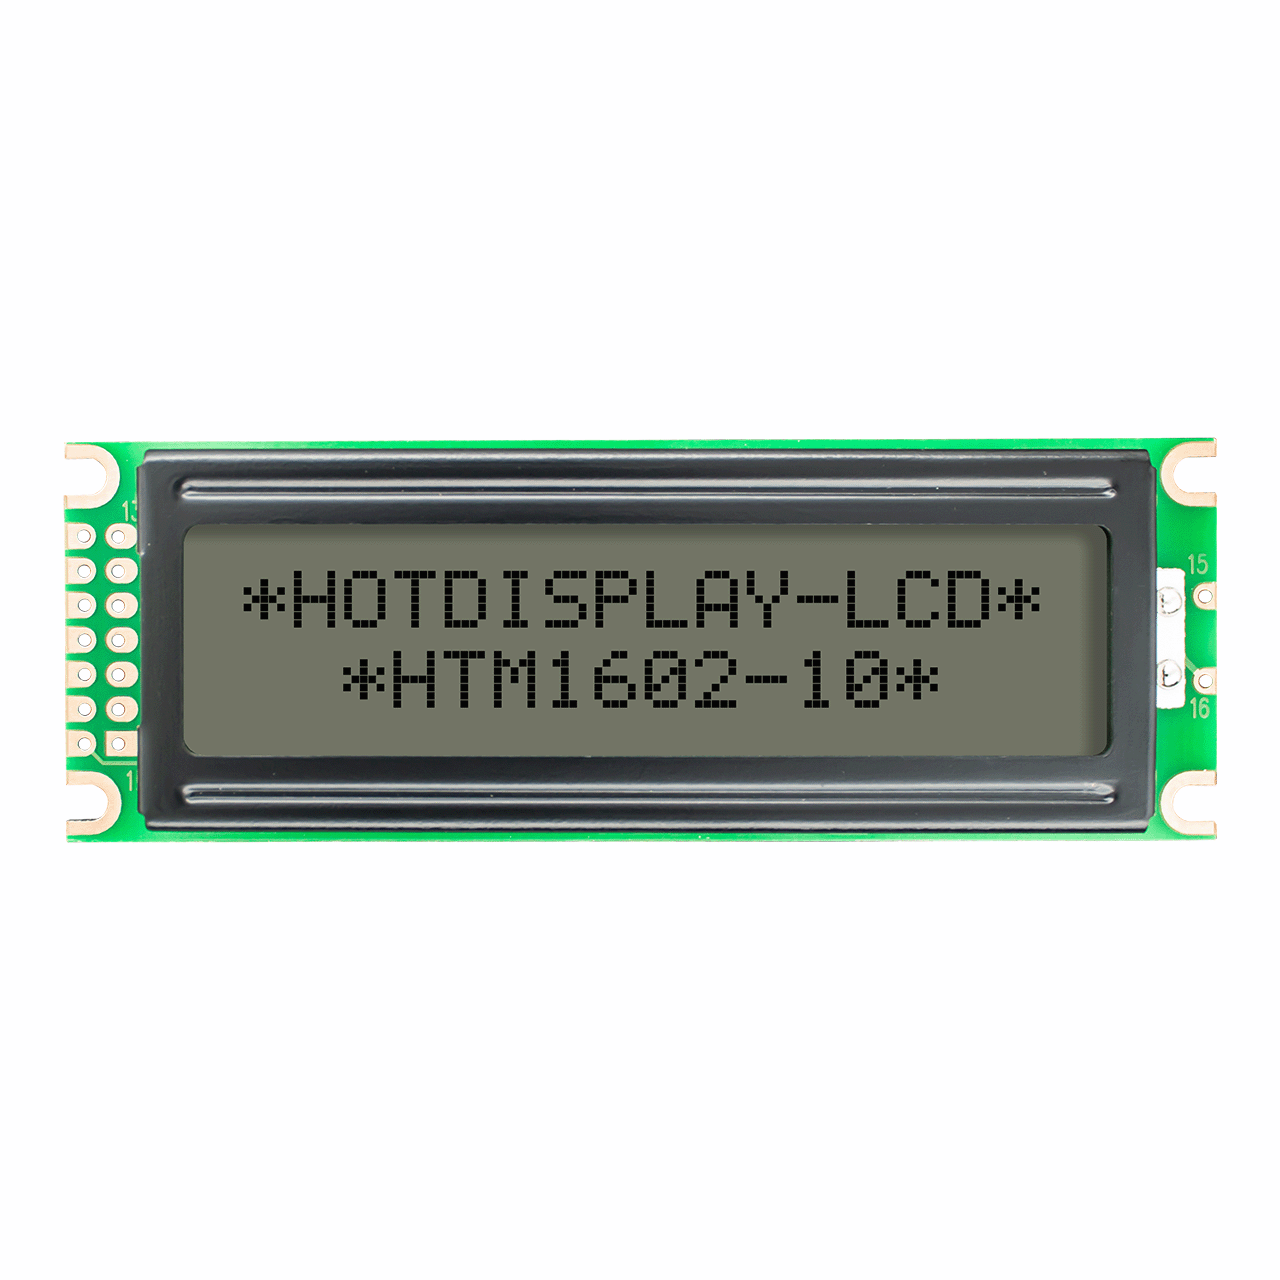 字符 2X16 LCD模组 单色显示器 | FSTN+ 侧面白色背光 5.0V-Arduino